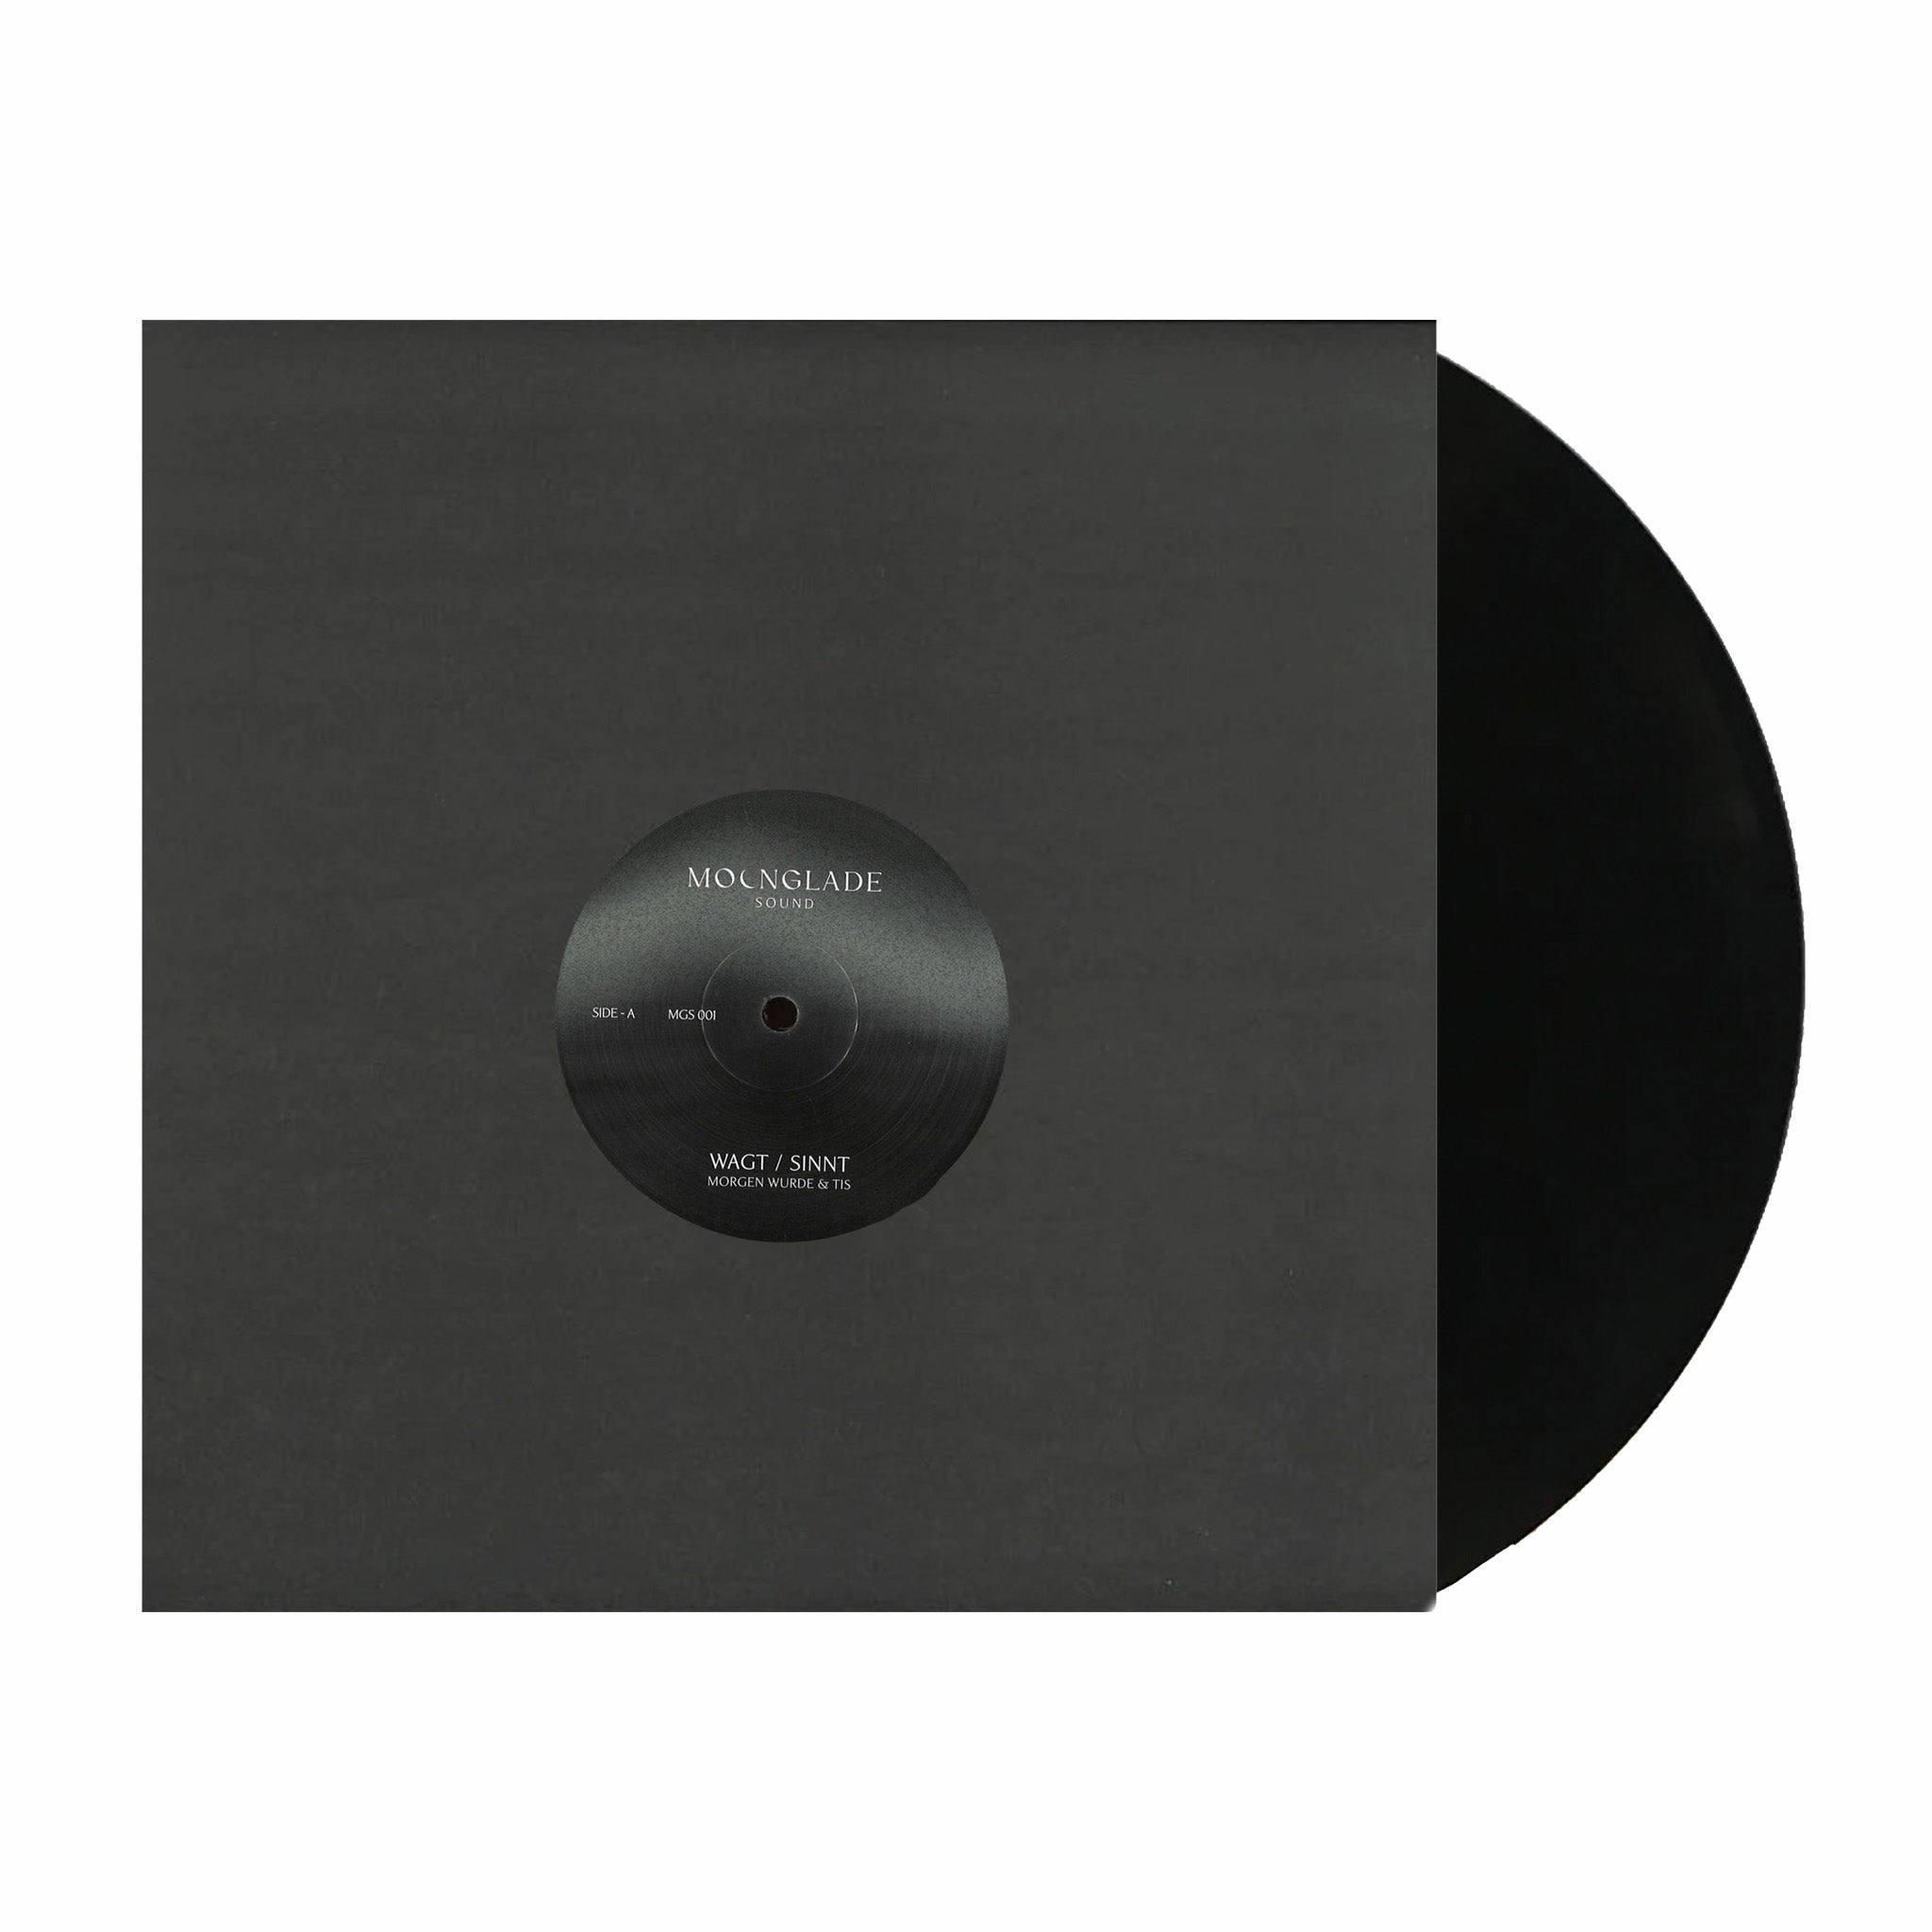 Morgen Wurde &amp; Tis &quot;Wagt / Sinnt Remixes&quot; Limited Edition 12&quot; EP - August Shop